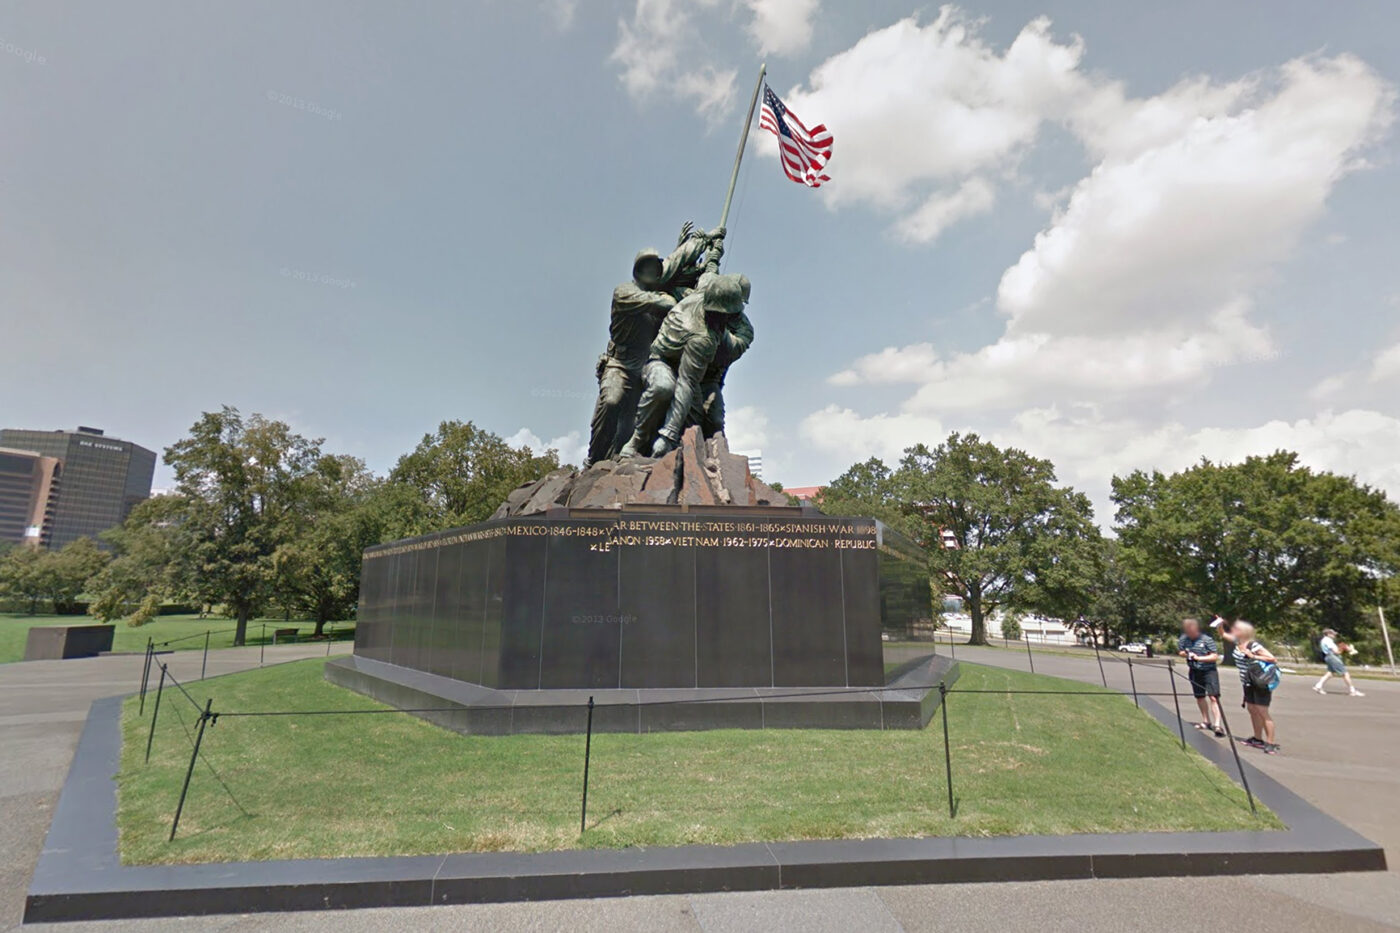 127. Iwo Jima Memorial. Arlington, Virginia